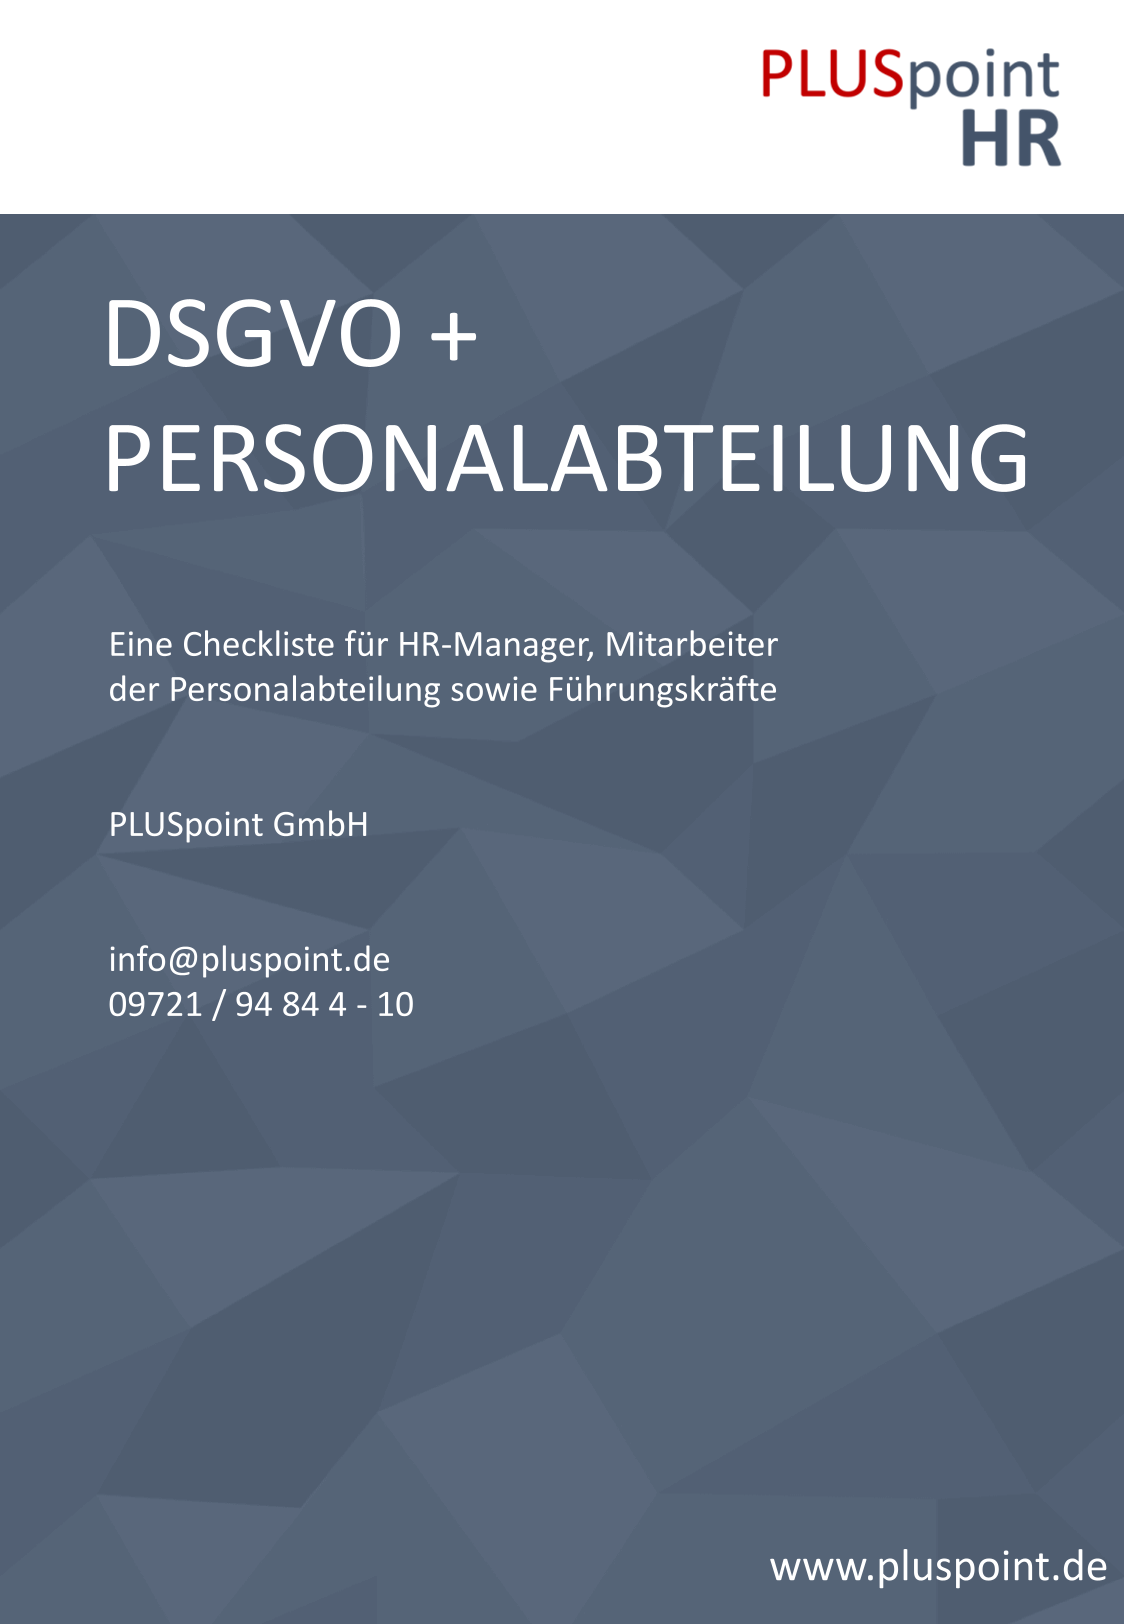 DSGVO+Personalabteilung